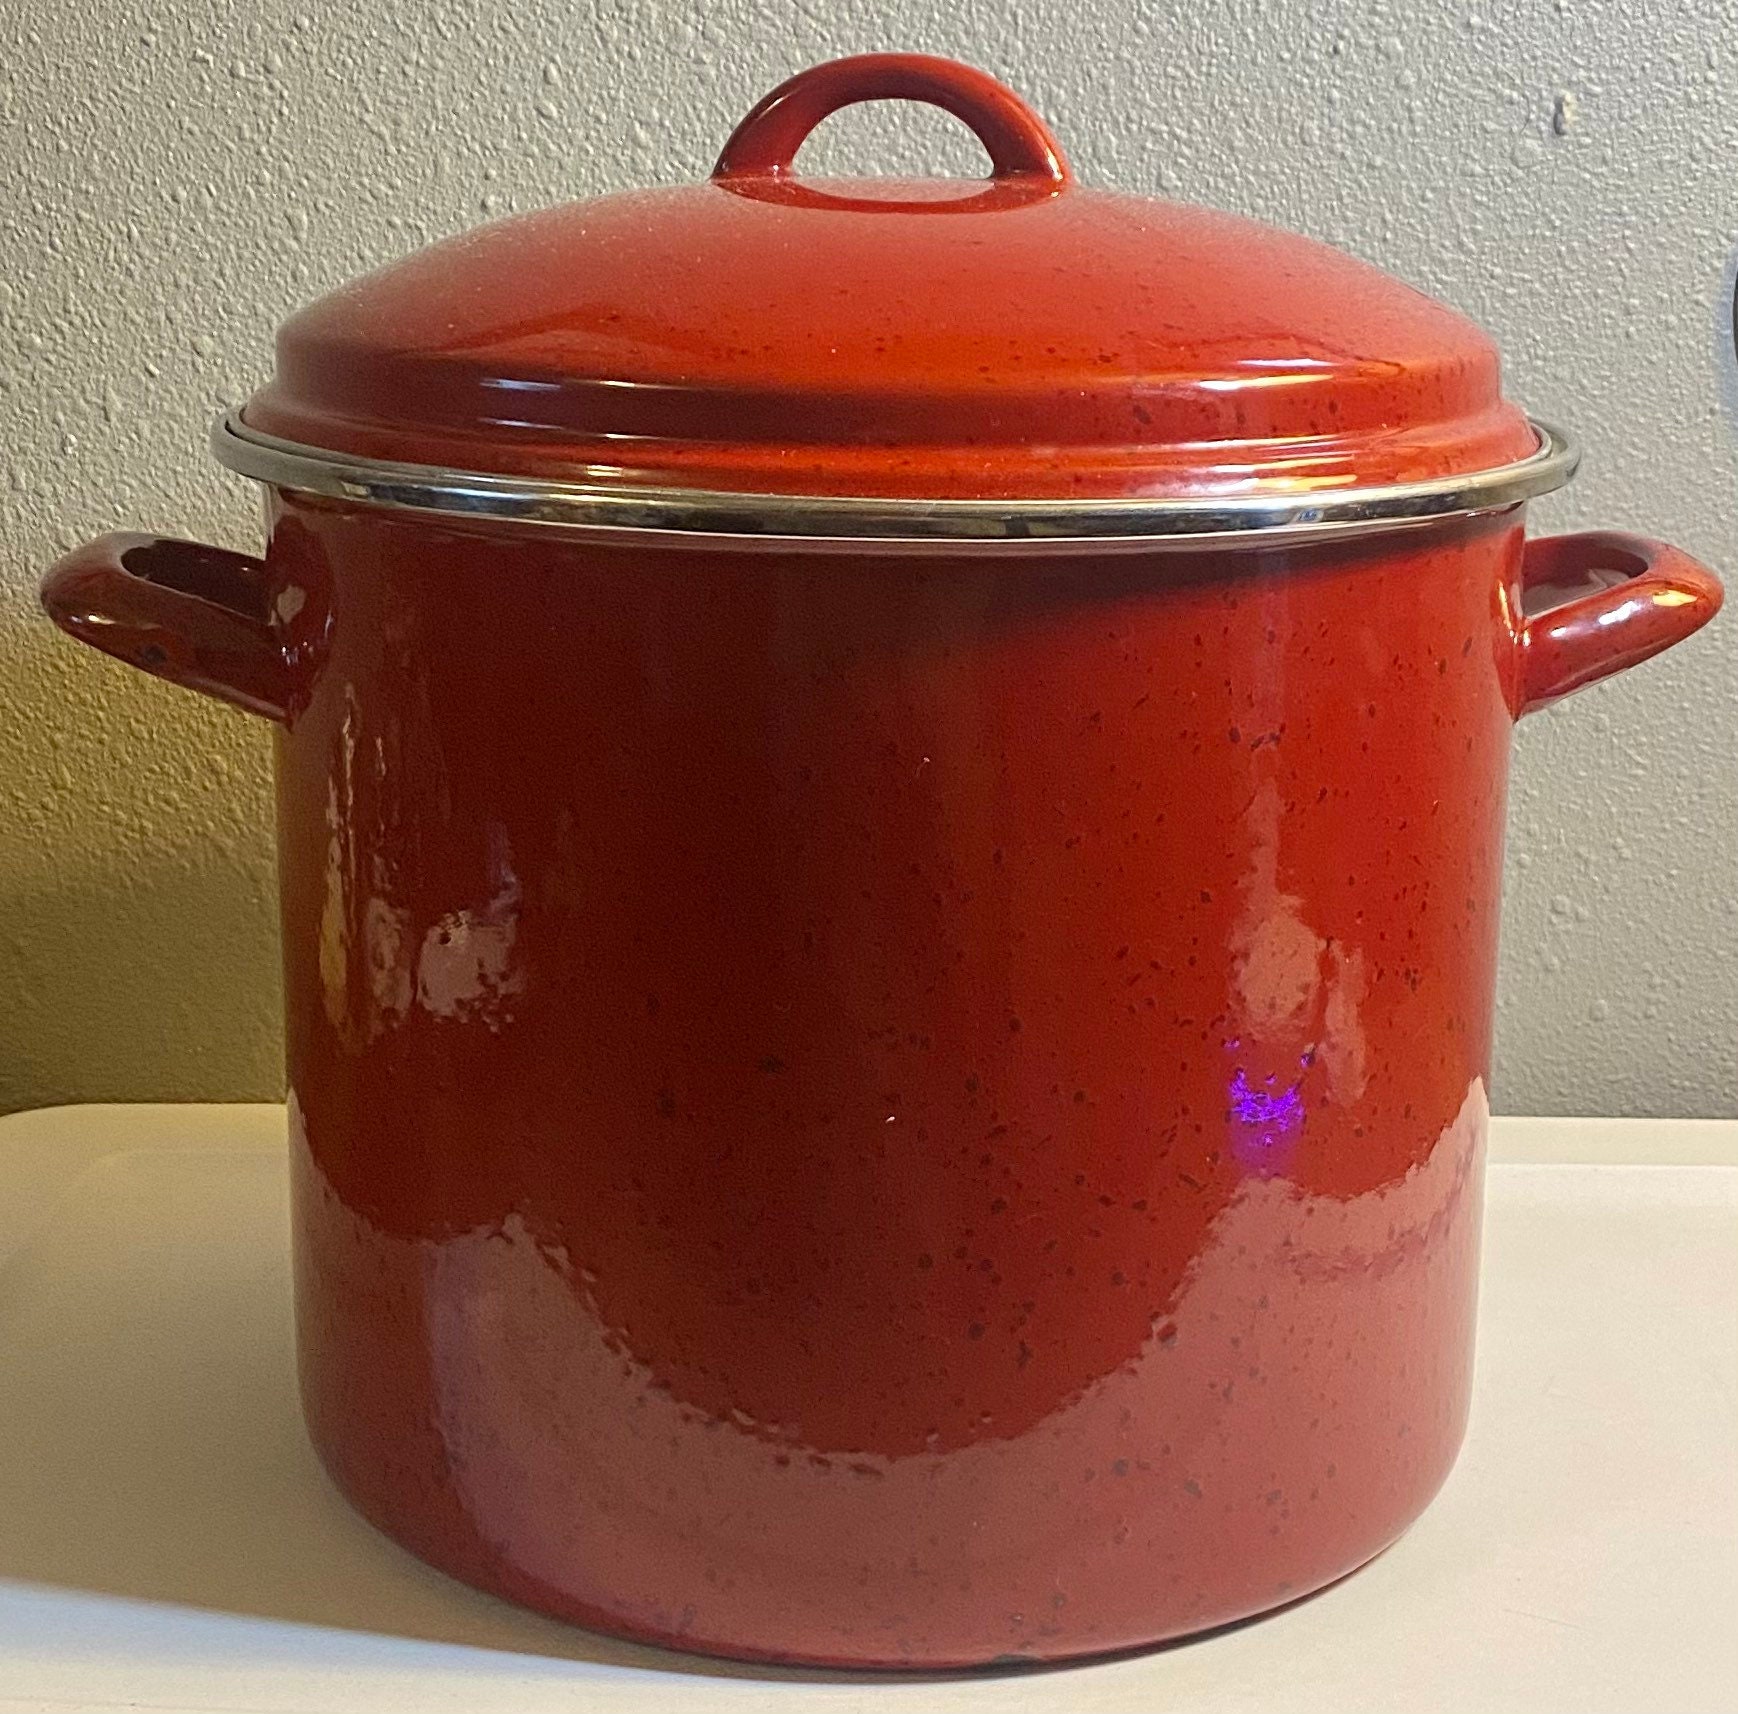 Paula Deen 11-Piece Red Cookware Set